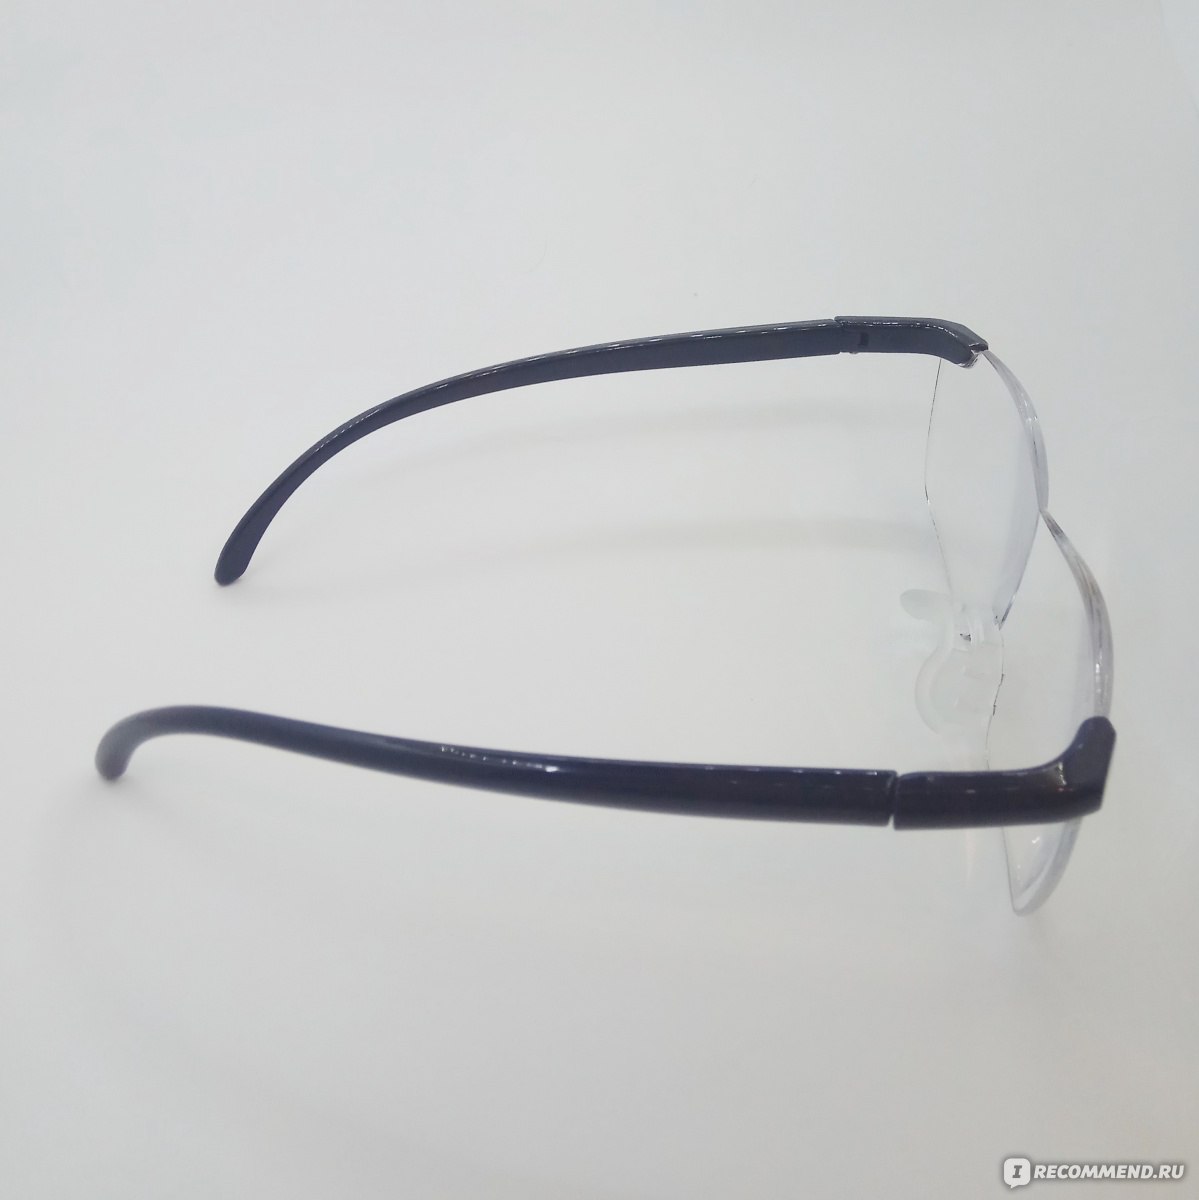 Купить очки гуглес алиэкспресс в петербург mavic air сумка